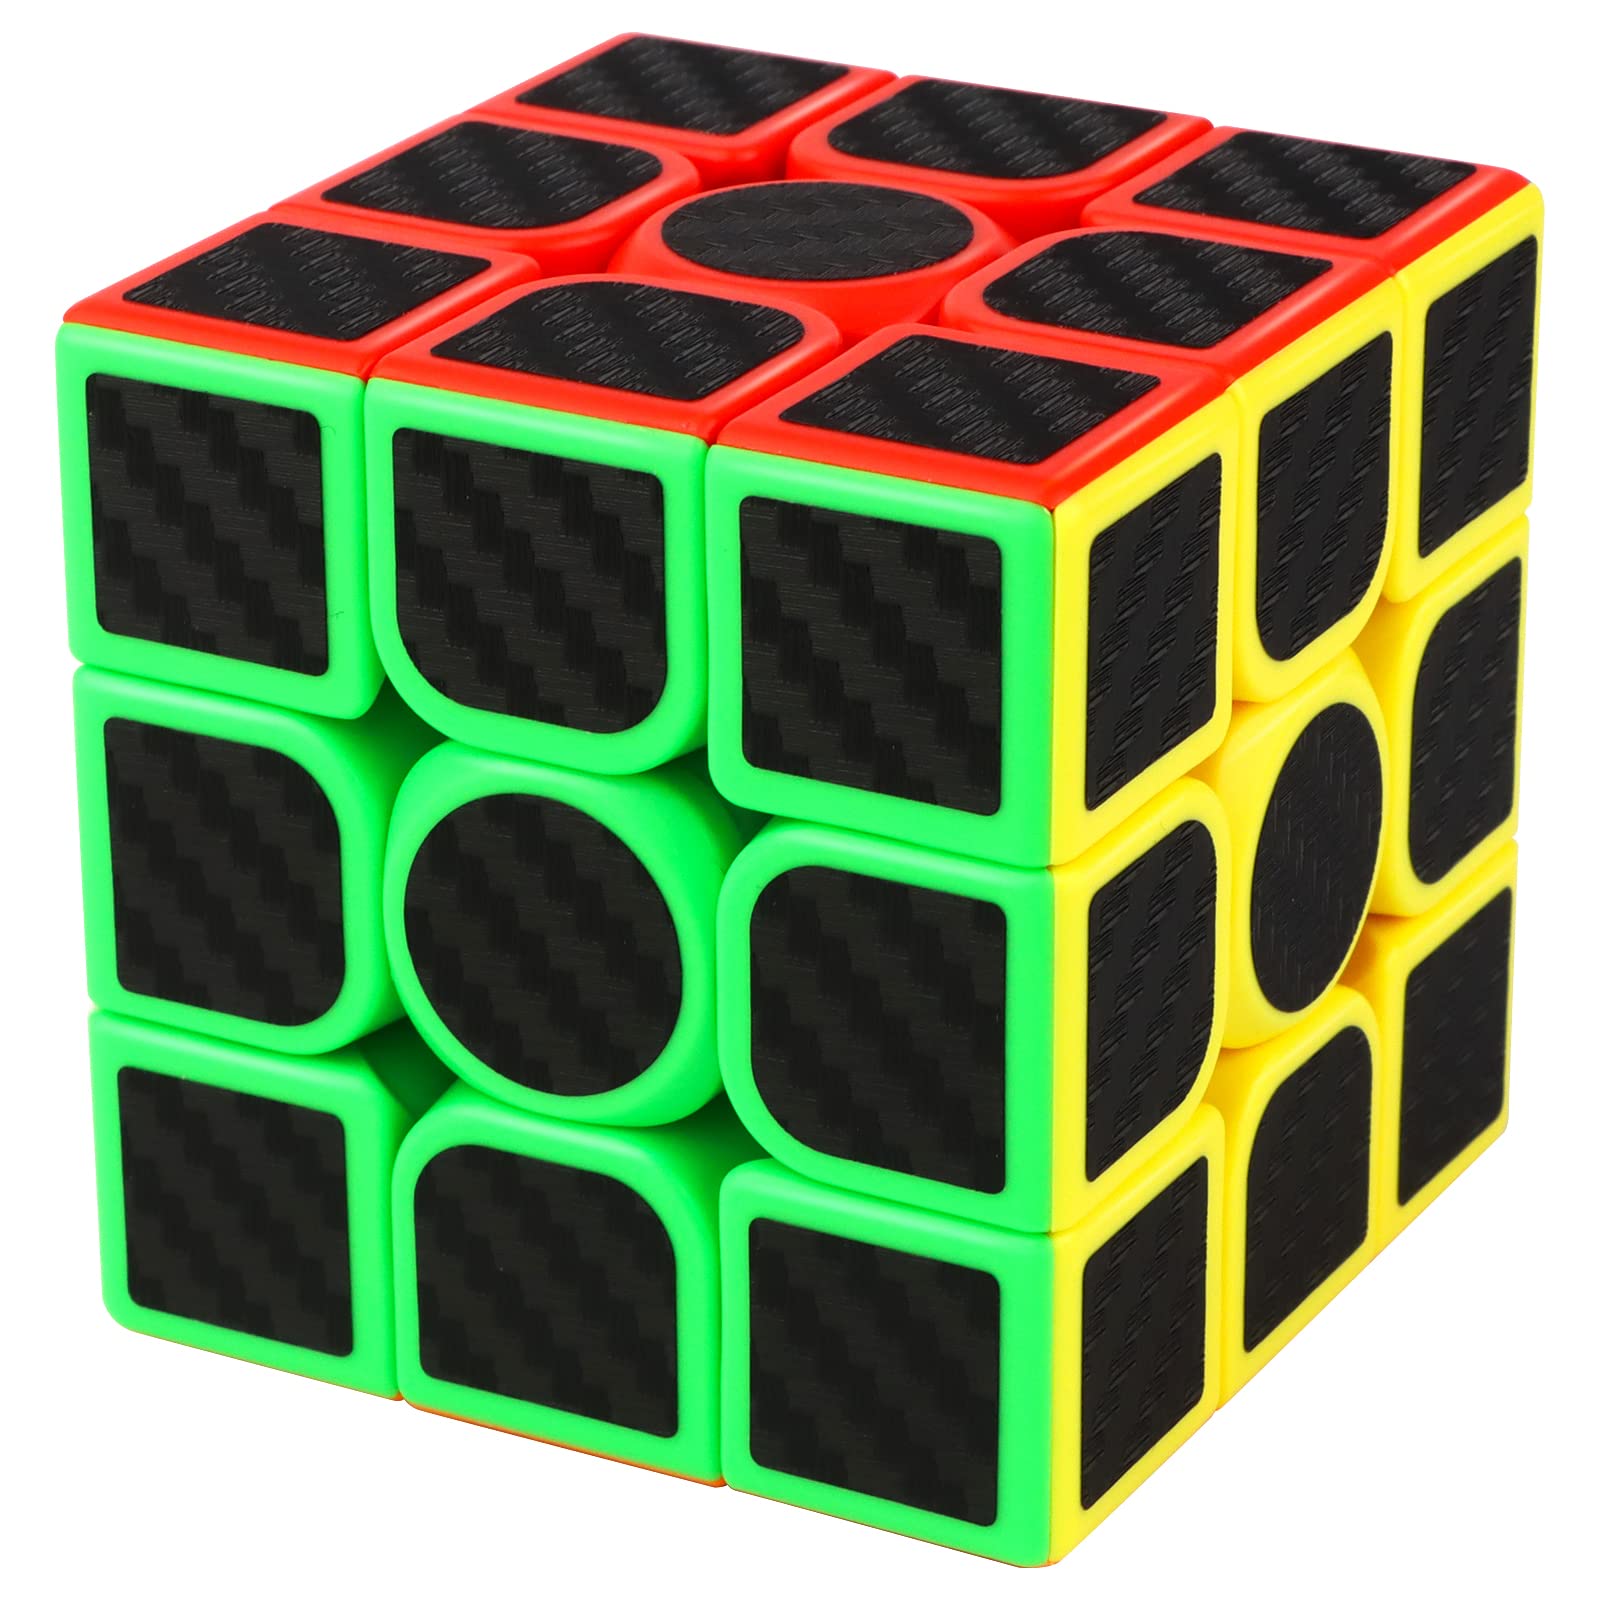 Cube magique à rotation rapide